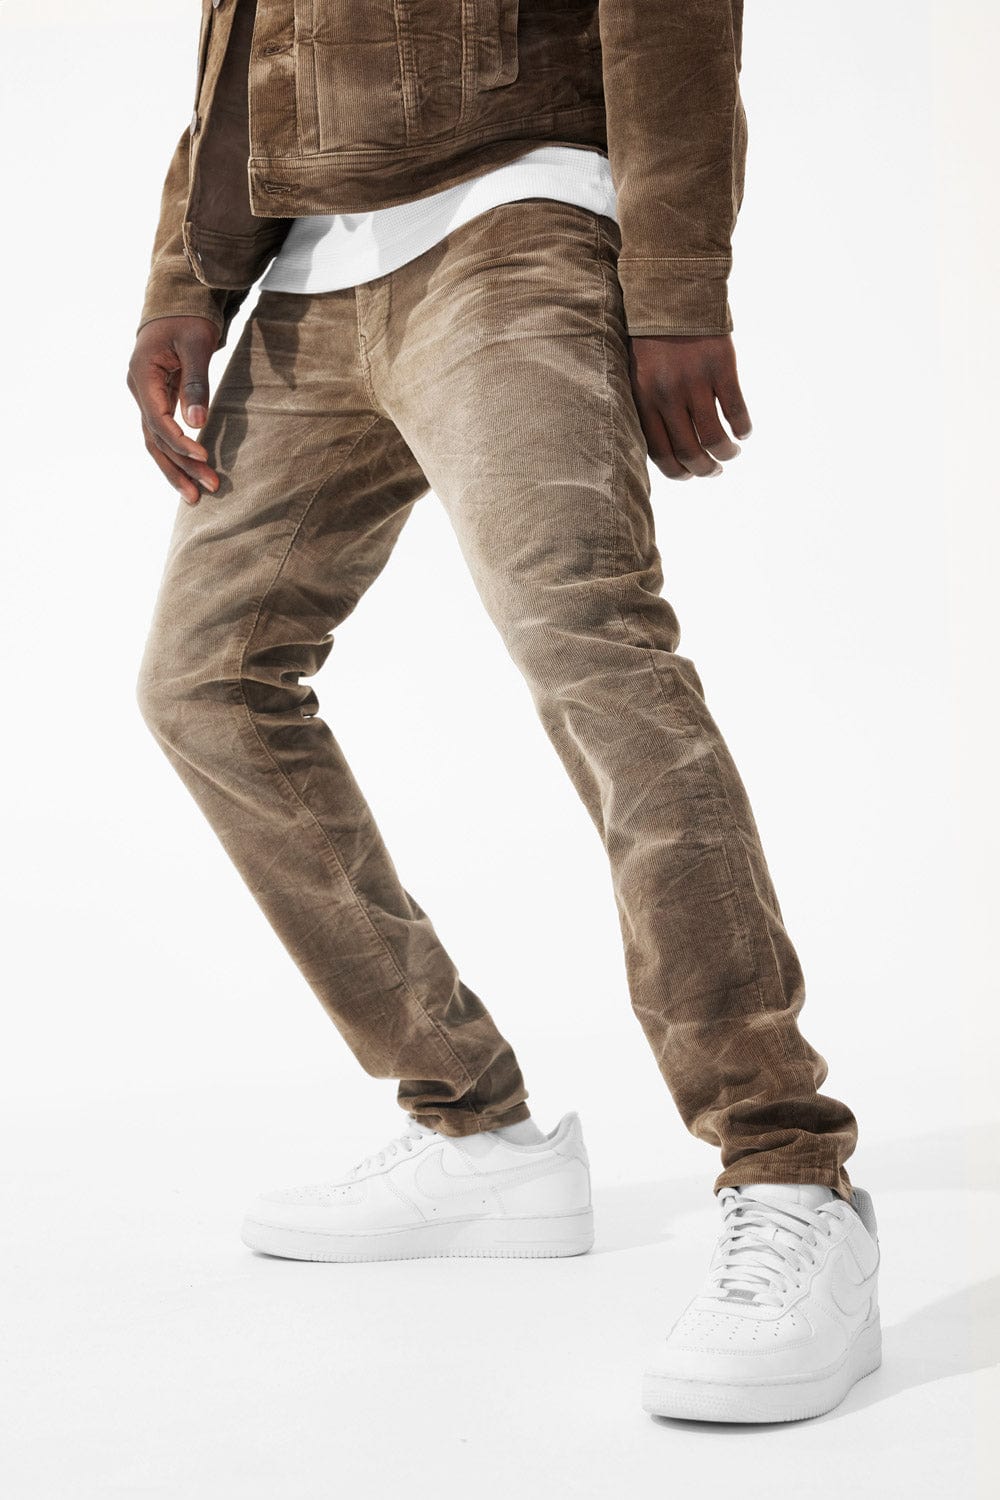 Jordan Craig Sean - Atlas Corduroy Pants (Brown) 32/30 / Brown